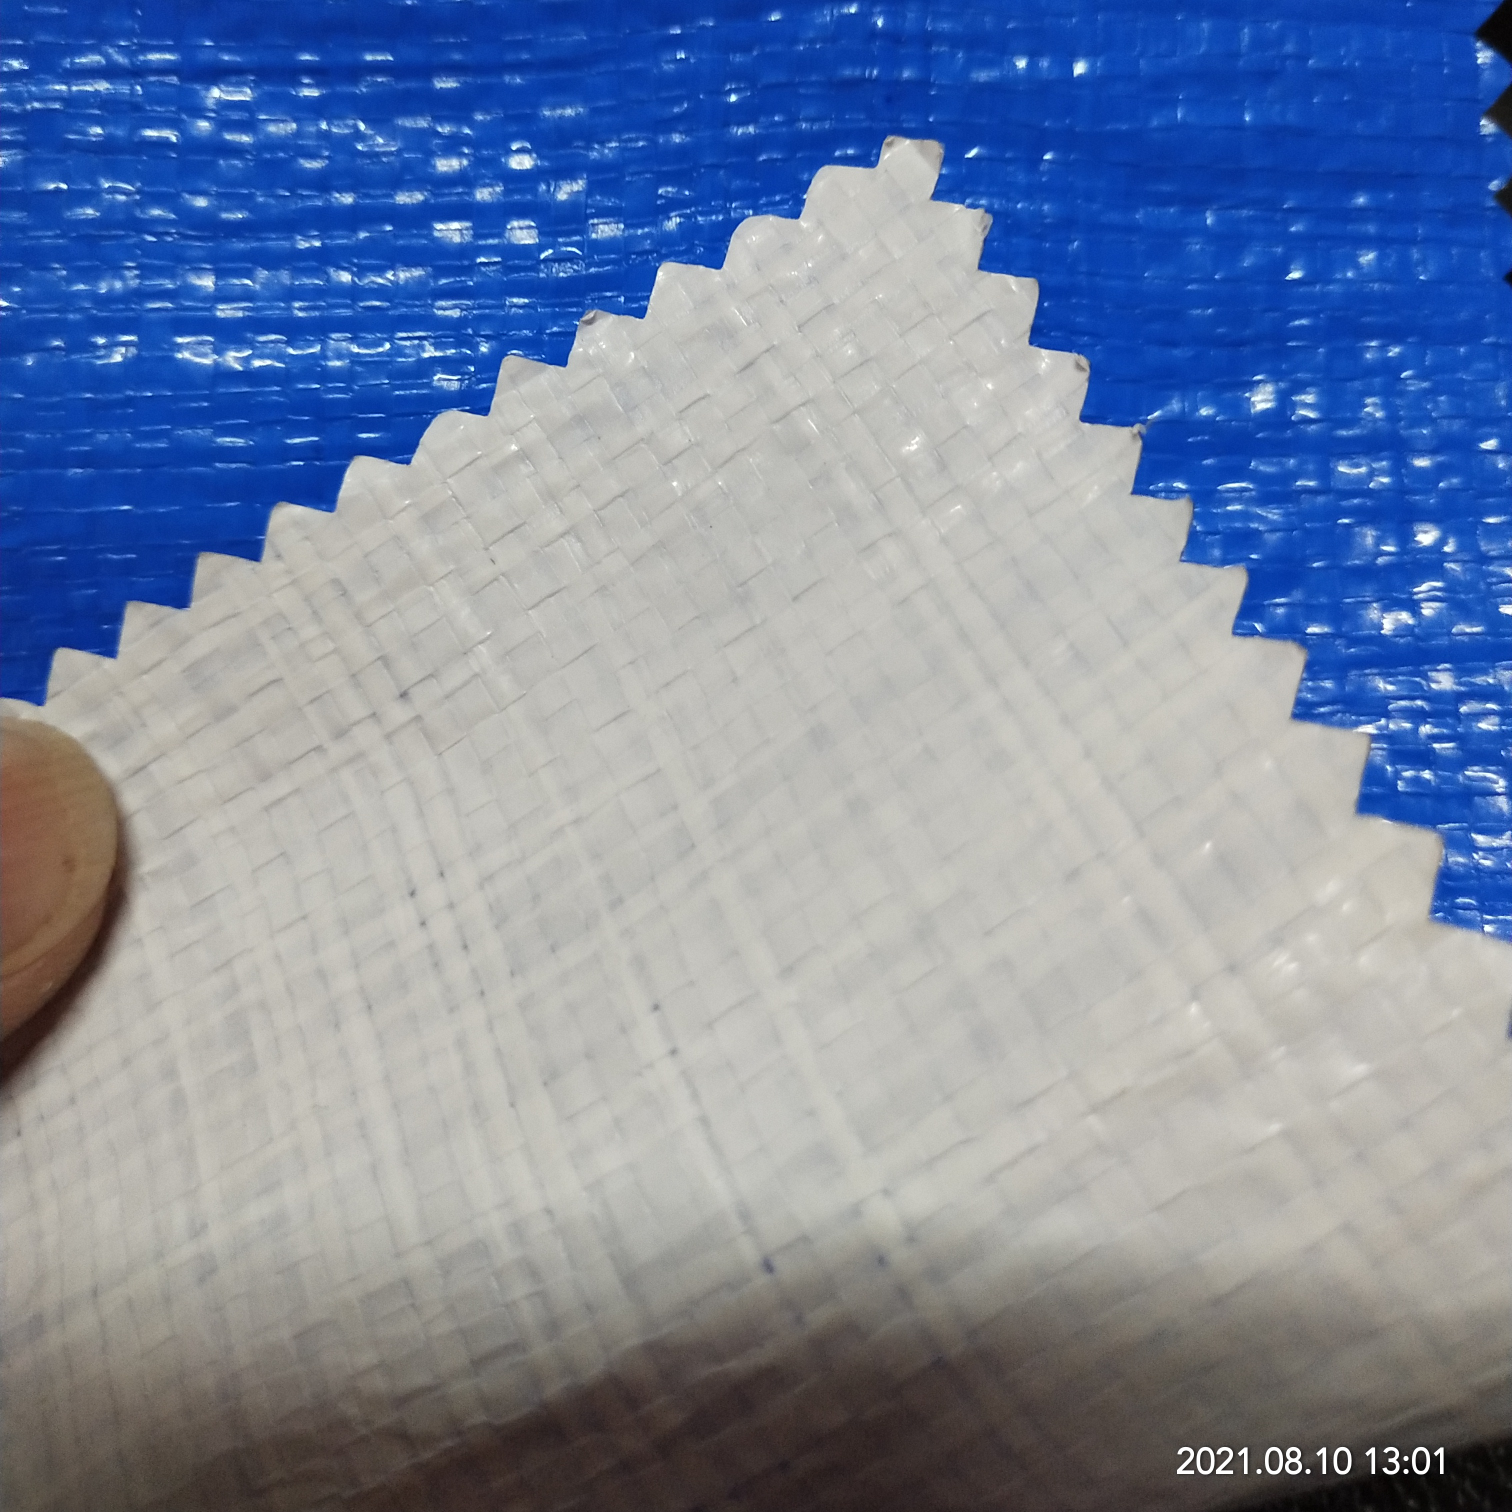 双面淋膜185克蓝白PE防水布  塑料编织布  适用于花房篷布 汽车篷布 帐篷底布 各种手提袋  收纳箱专用面料